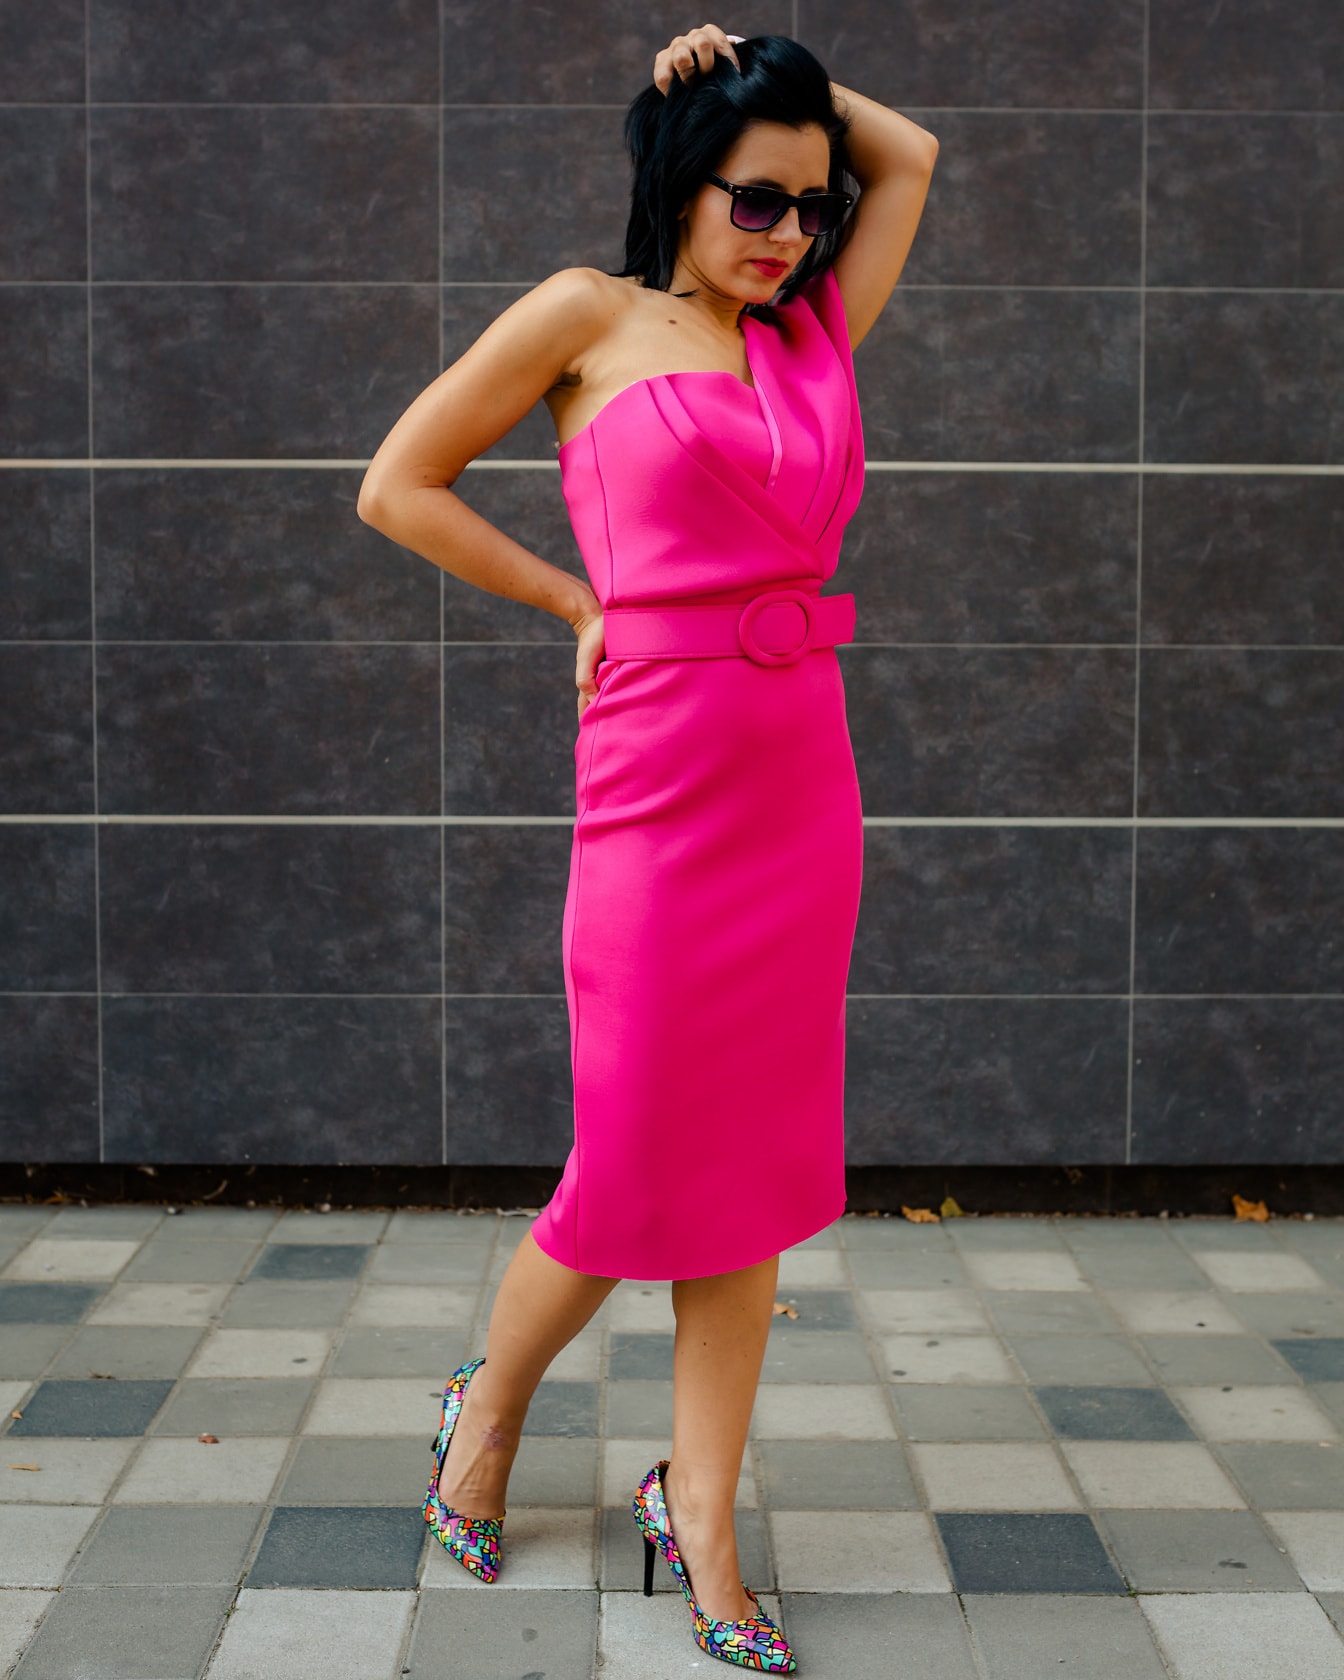 Splendida giovane donna foto modella in posa in un vivido vestito rosa